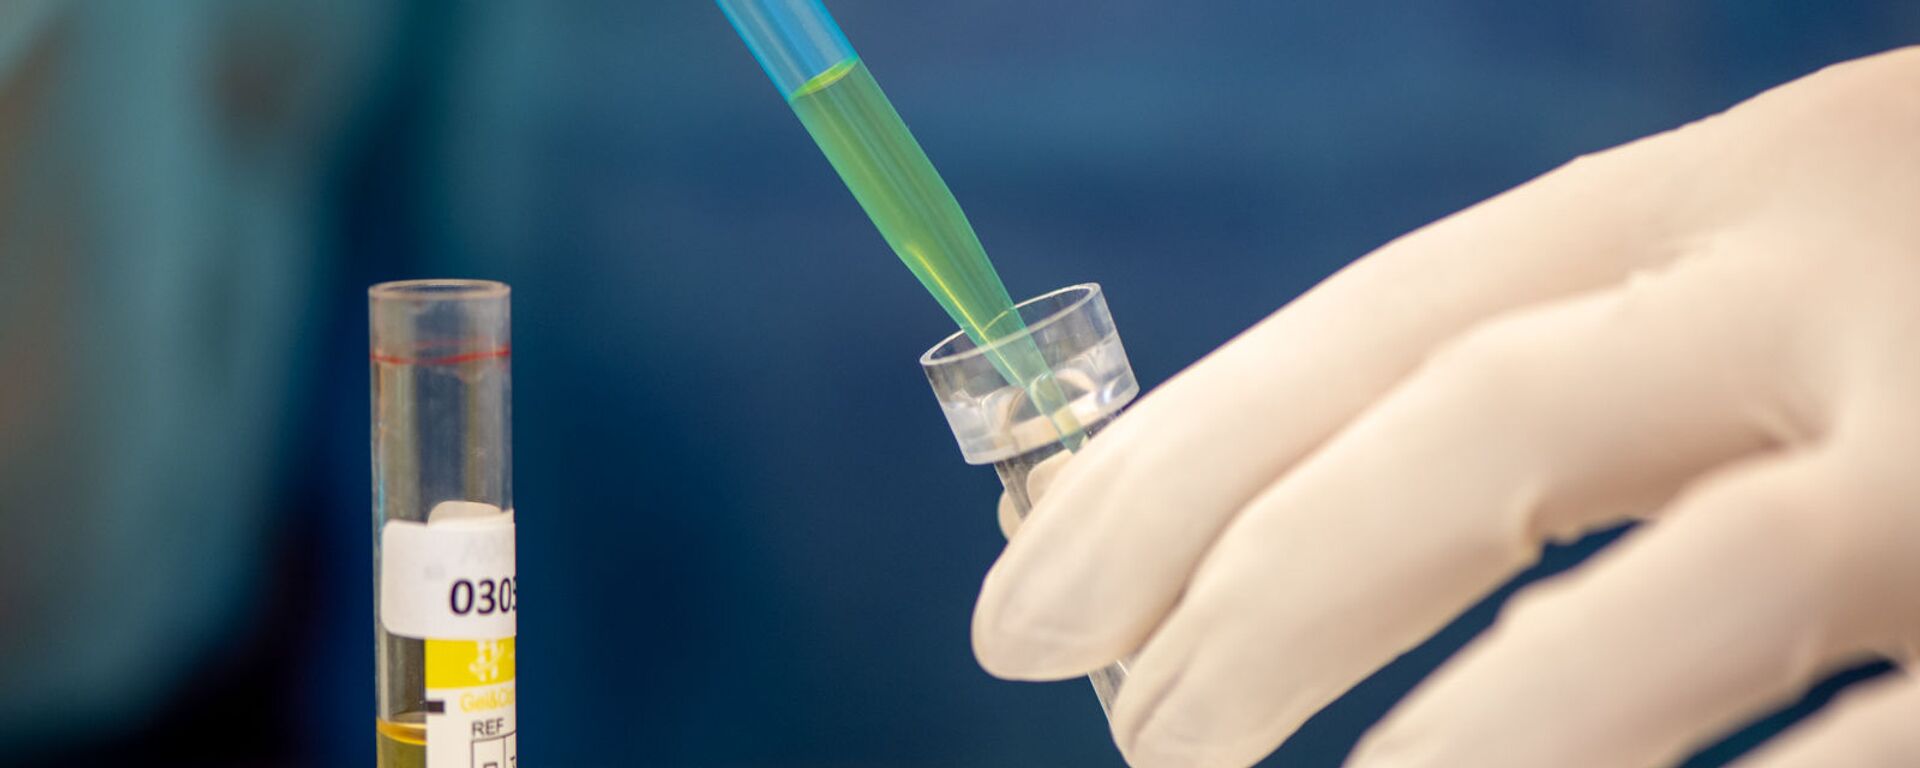 Лаборатория для проведения тестов на антитела к коронавирусу в Республиканском центре профилактики СПИДа - Sputnik Արմենիա, 1920, 31.05.2021